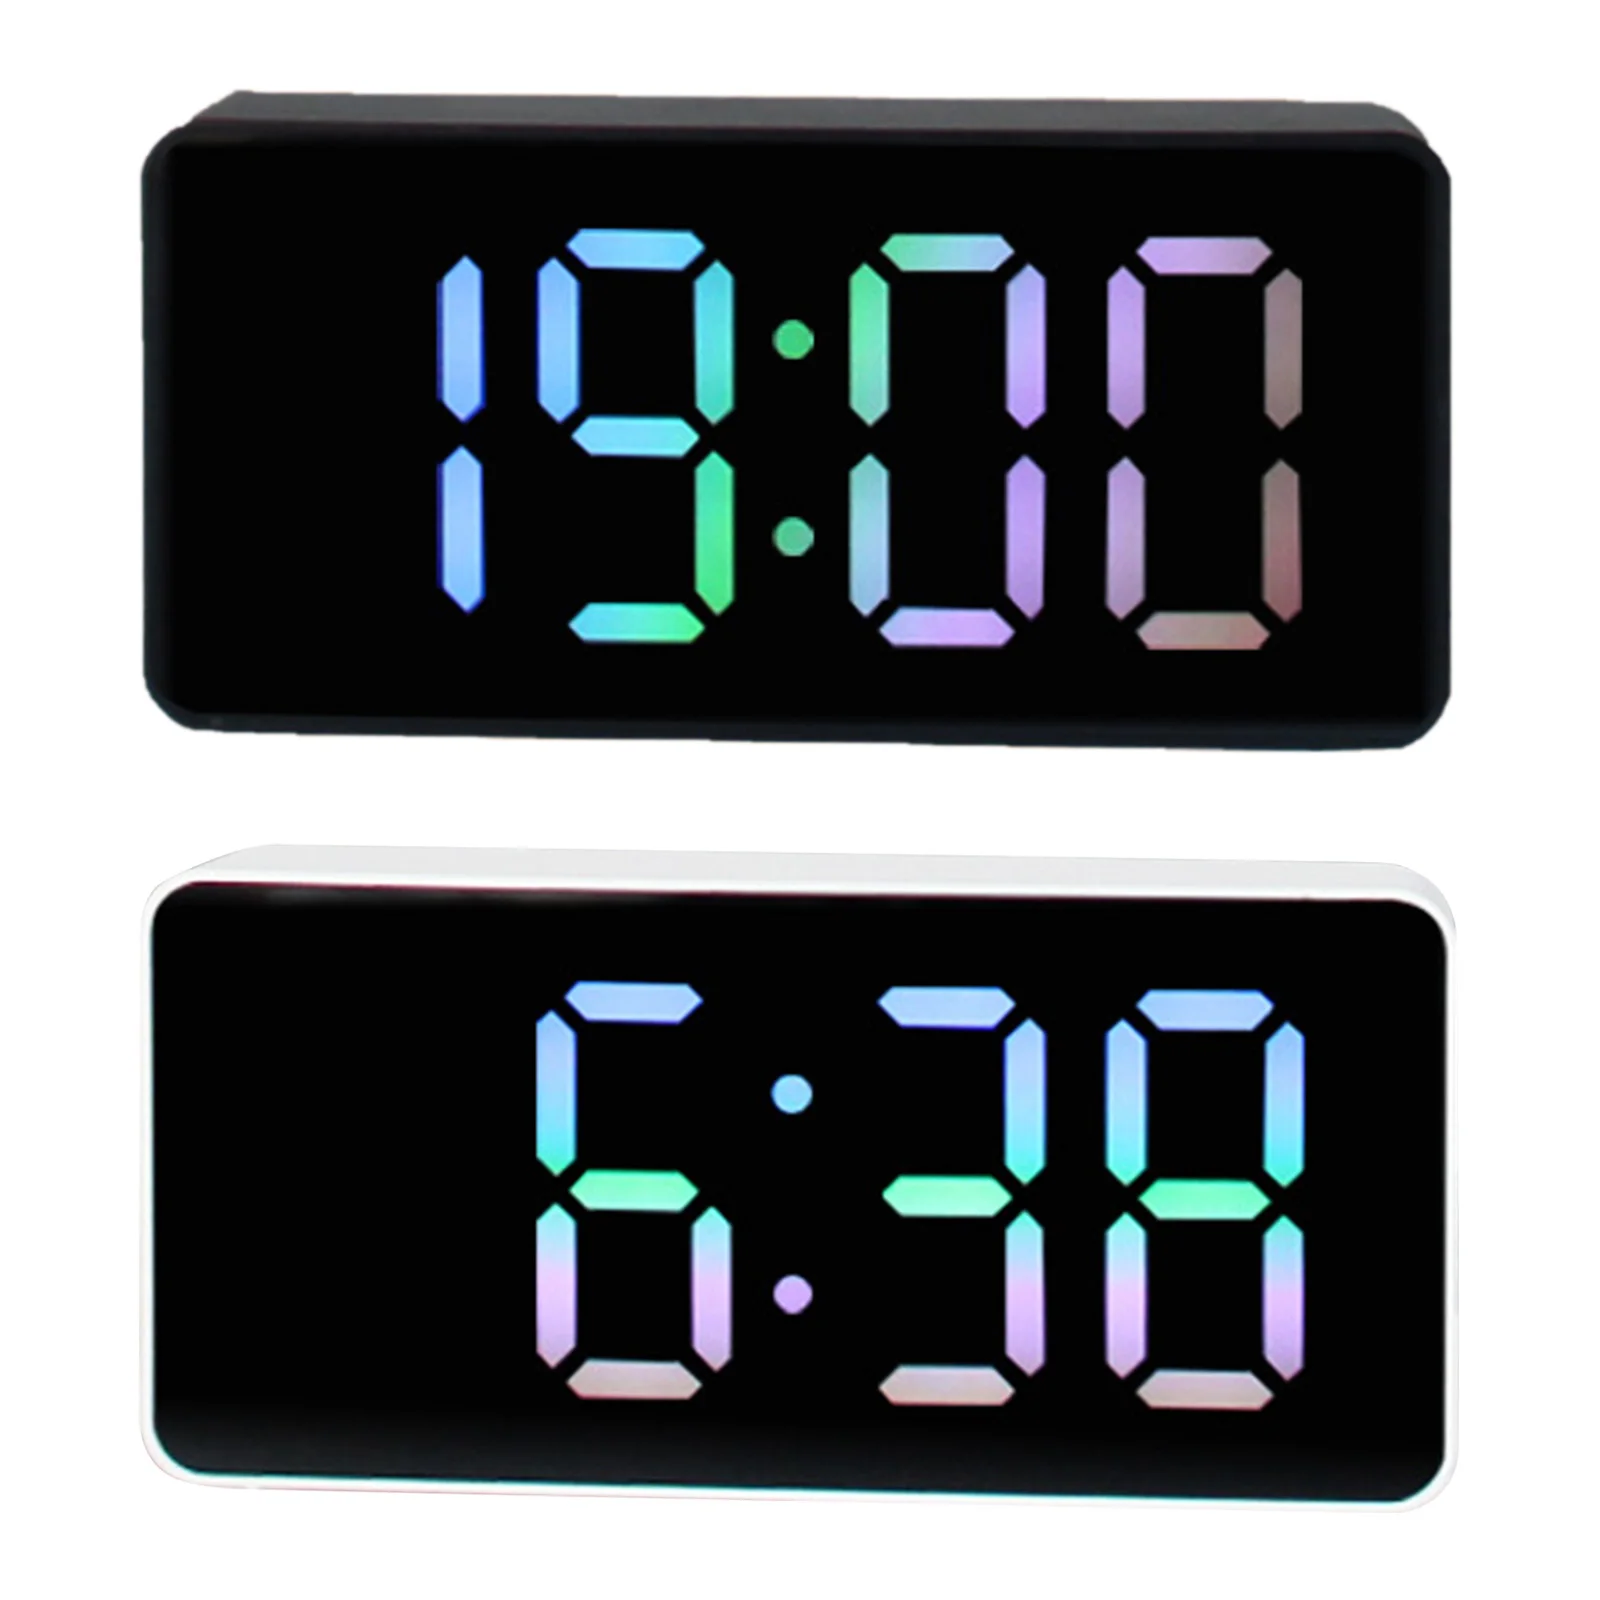 Wecker Digitalen Temperatur Uhr Led-anzeige Spiegel Uhren Schreibtisch  Tisch Uhr Mini Elektrische Uhren Für Wohnzimmer Decor - AliExpress